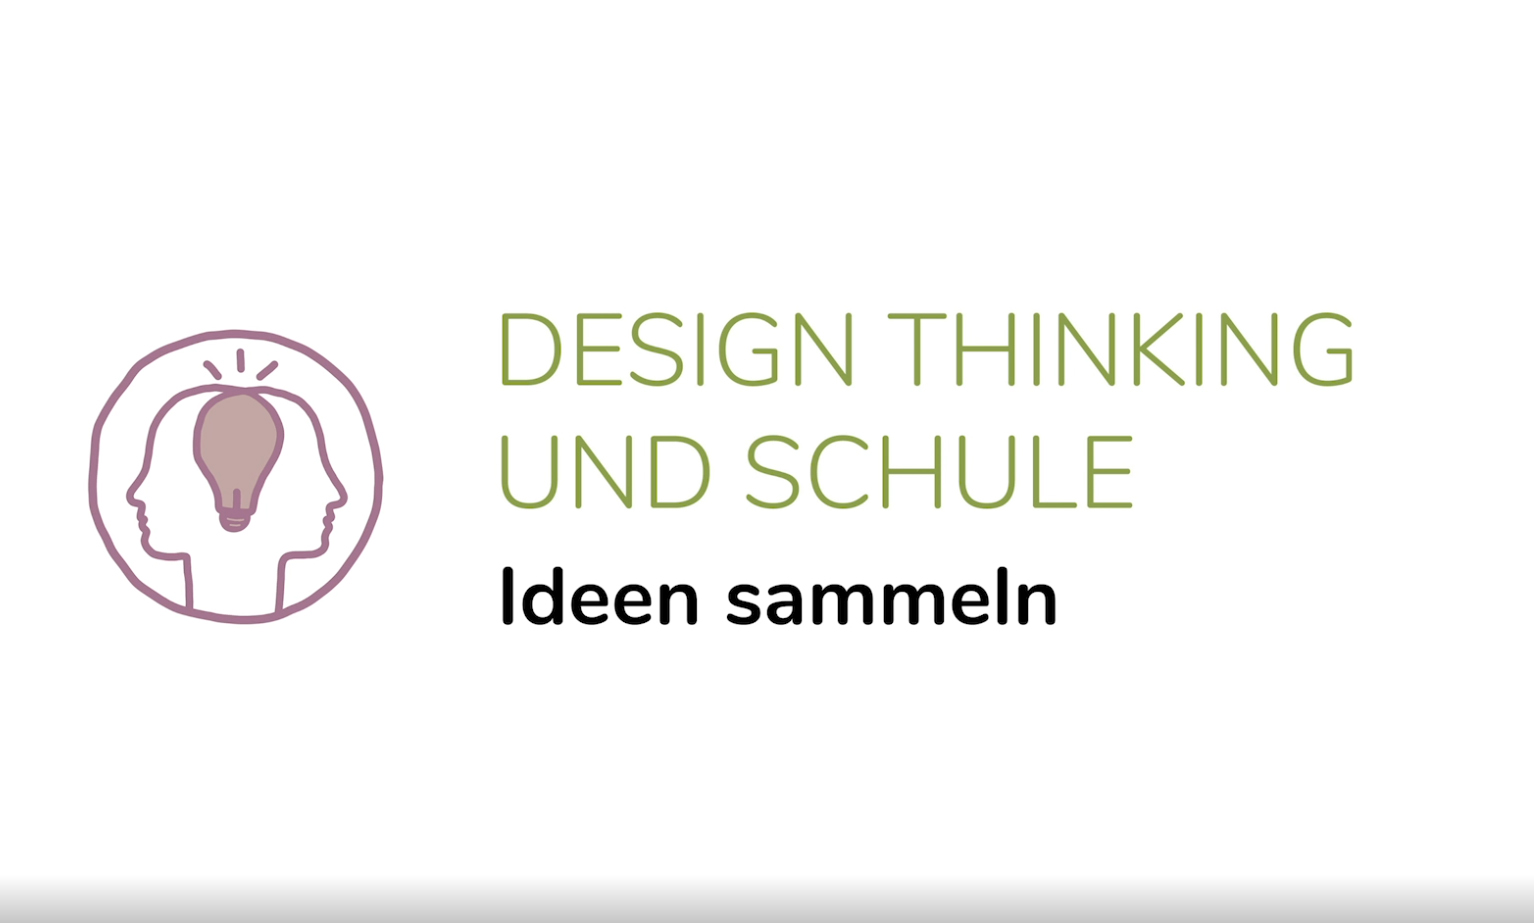 Design Thinking und Schule - Ideen sammeln (4. Phase)